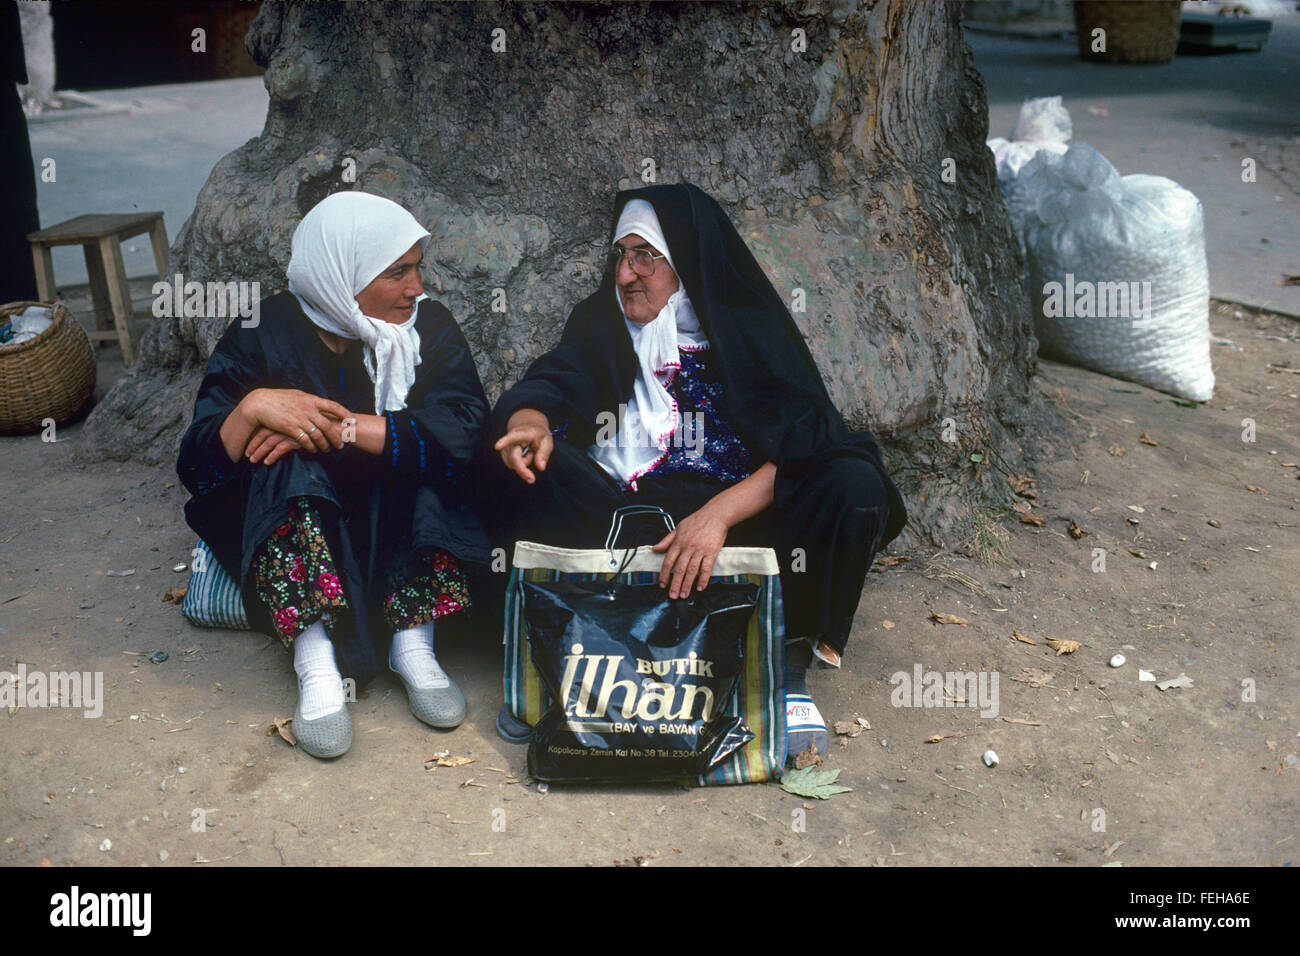 Zwei Generationen von Türkin. Eine traditionelle türkische Frau, gekleidet in traditioneller Tracht Gespräche mit einem jüngeren türkischen Mädchen oder junge Frau unter einer Platane-Bursa-Türkei Stockfoto